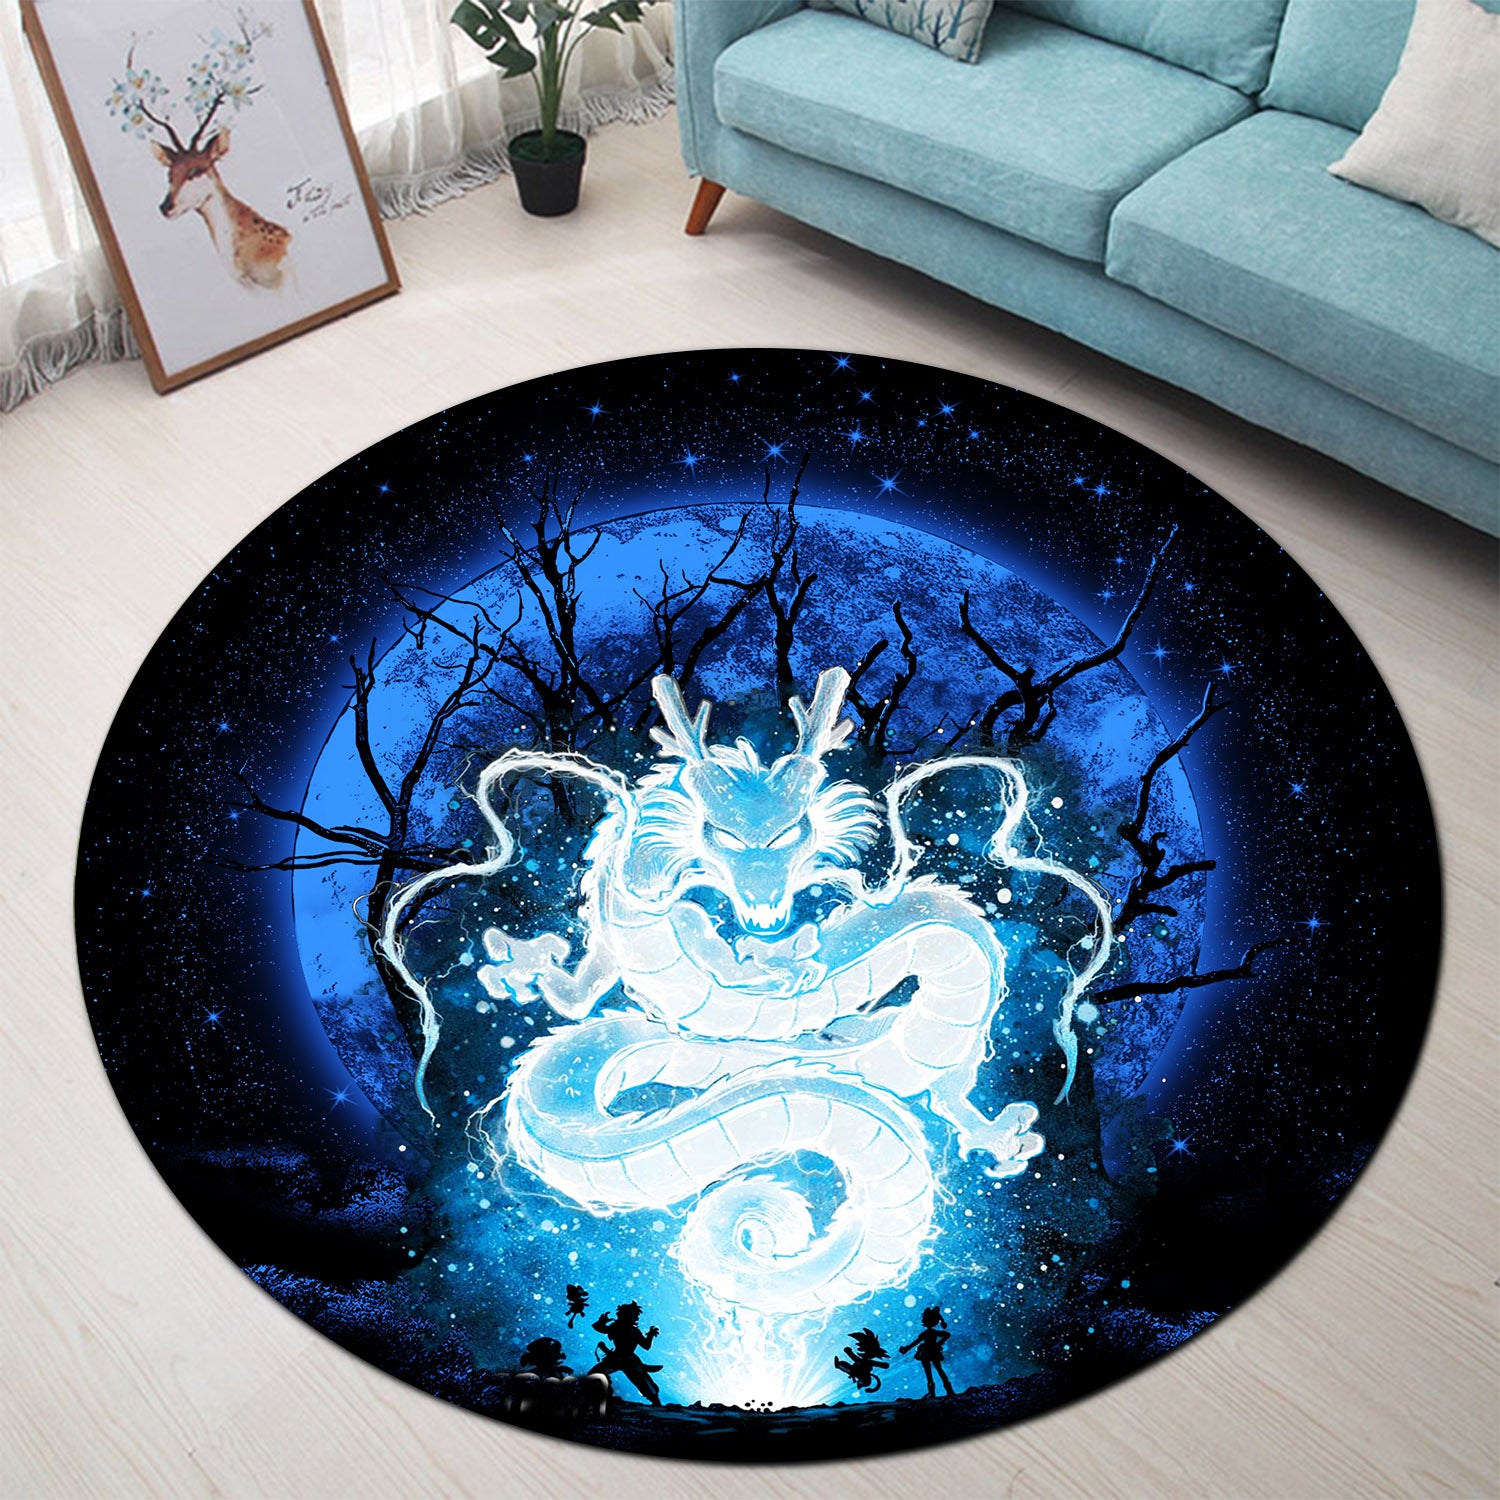 Shenron Dragon Ball Moonlight Round Carpet Rug Bedroom Livingroom Home Decor Nearkii